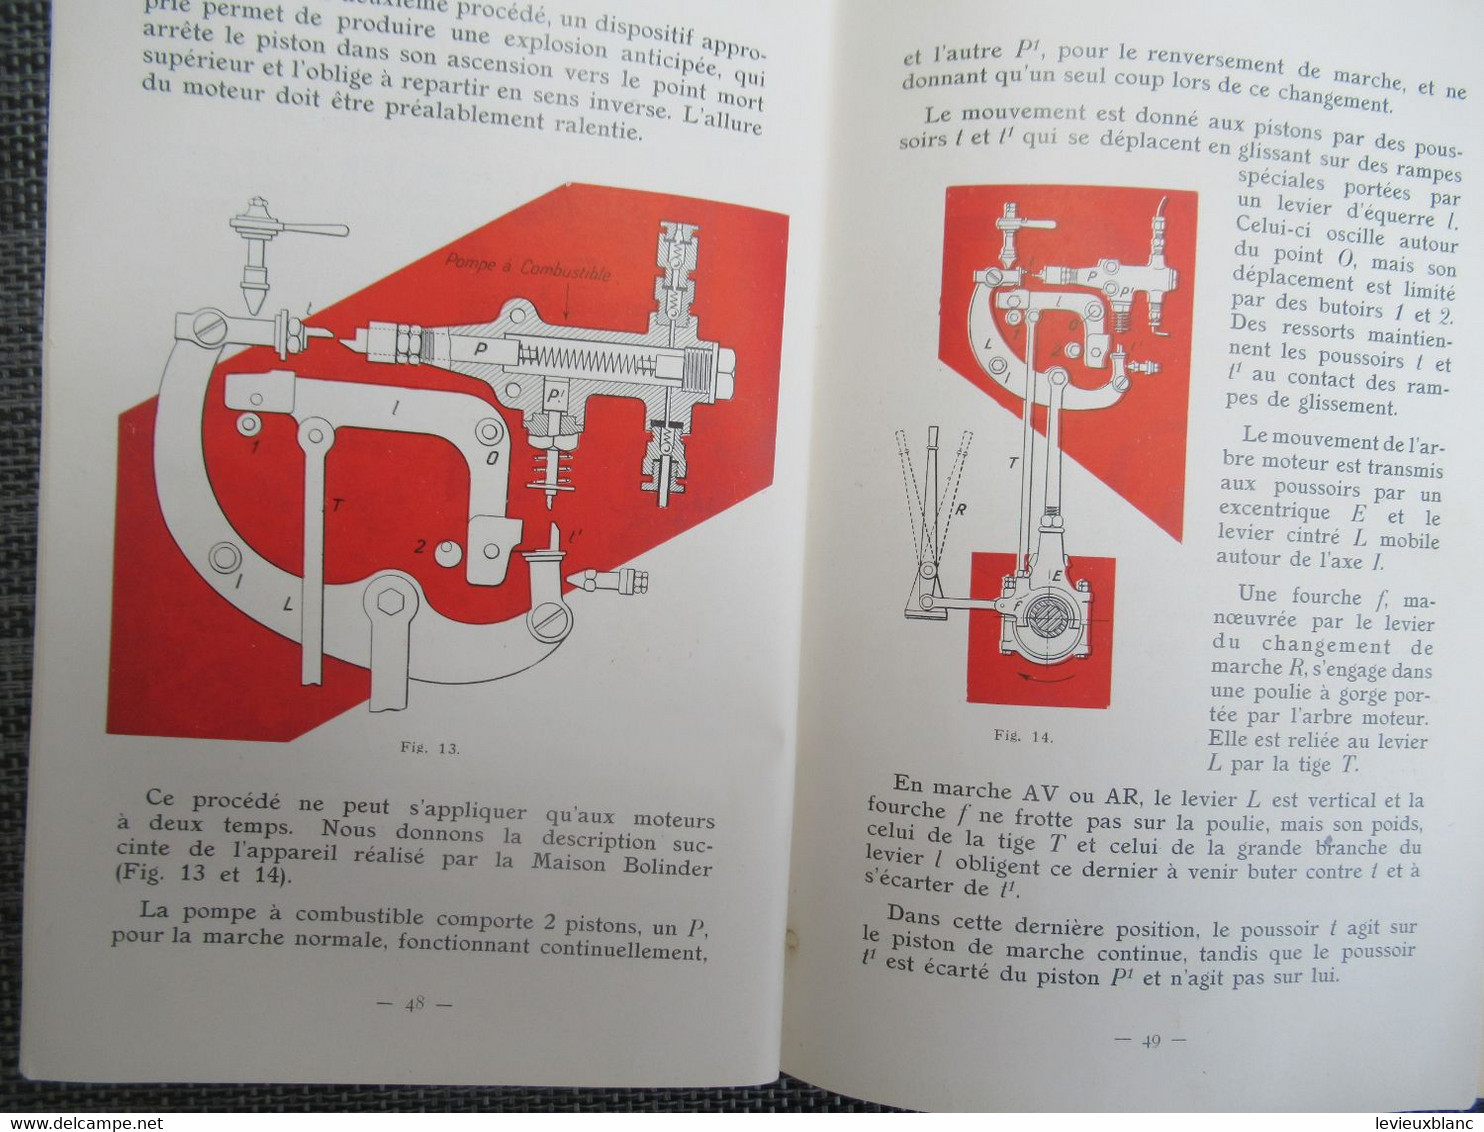 Guide de Graissage  MOTEURS SEMI-DIESEL MARINS/Vacuum Oil Company/ Paris/GARGOYLE/Vers 1925-1930       MAR108